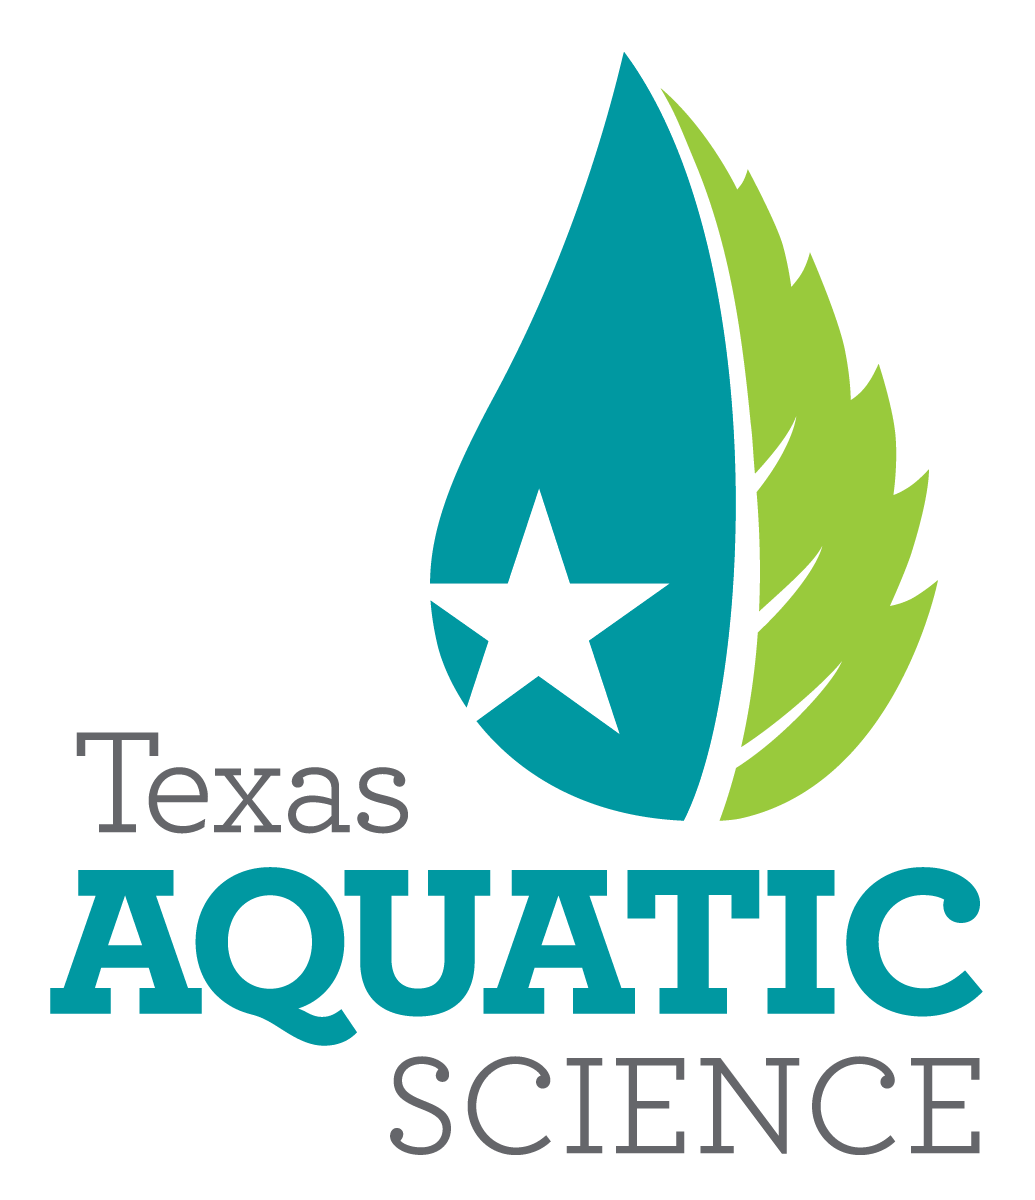 Texas Aquatic Science.png